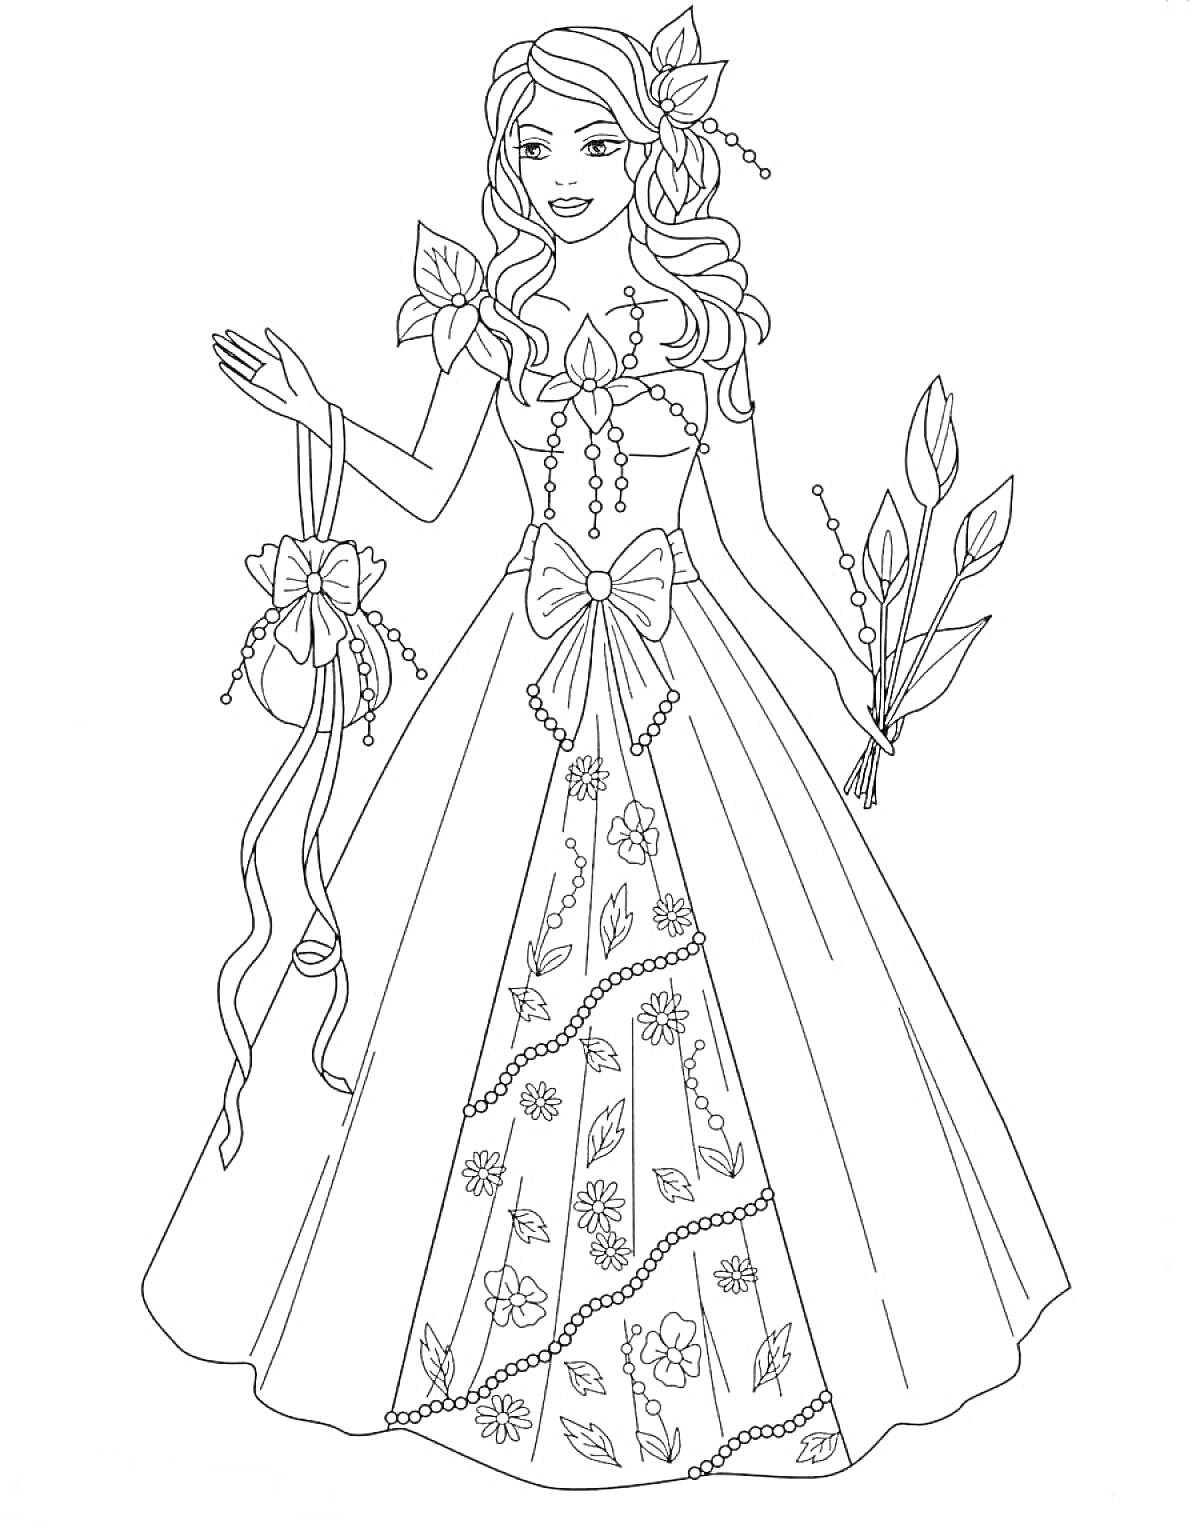 Раскраска Принцесса с длинными волосами в длинном платье с цветочным узором, с аксессуарами в виде ленты и веткой с листьями.